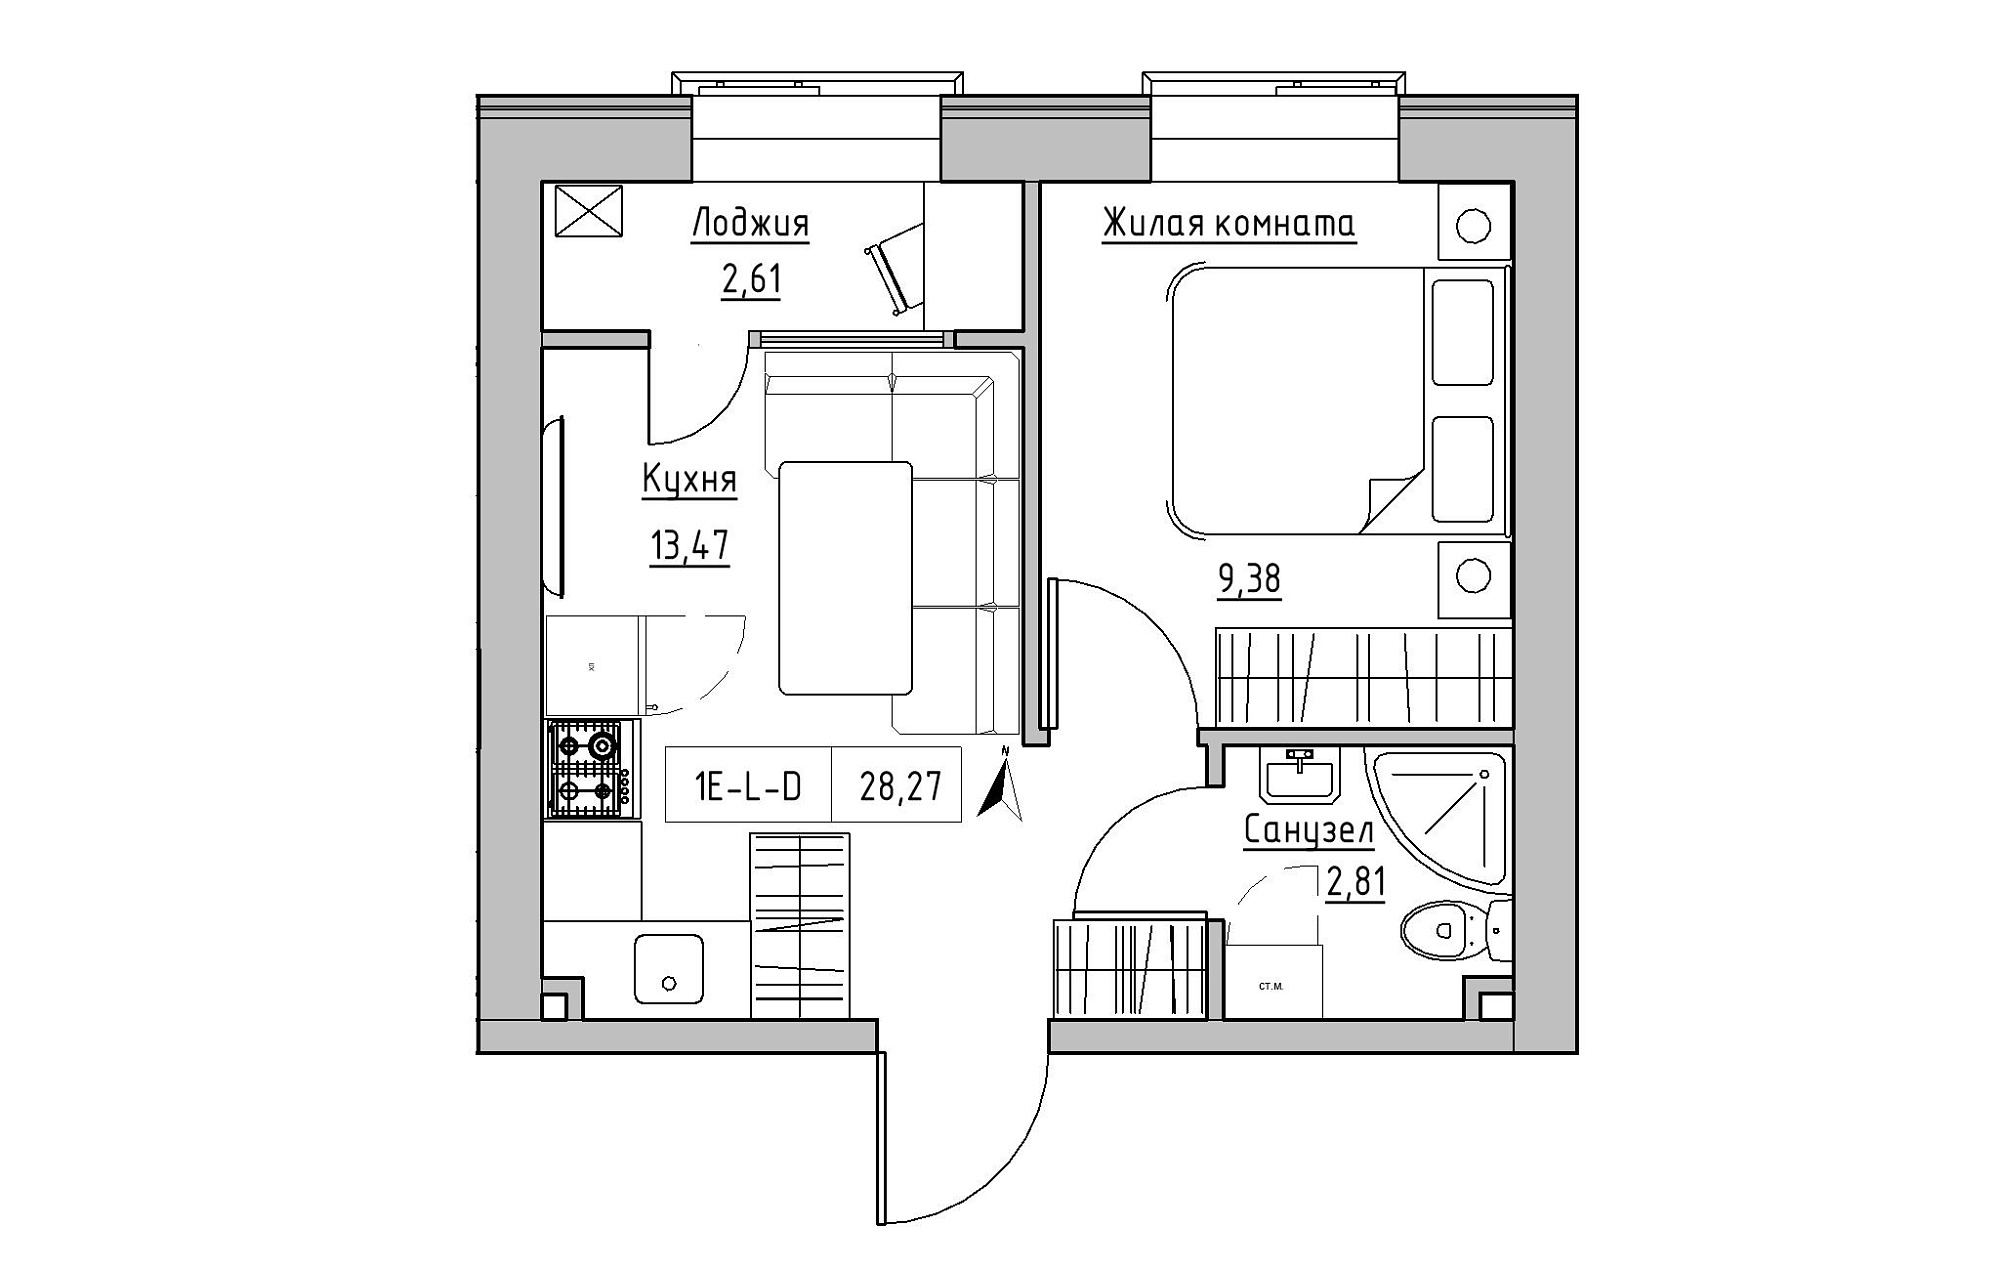 Планировка 1-к квартира площей 28.27м2, KS-019-01/0015.